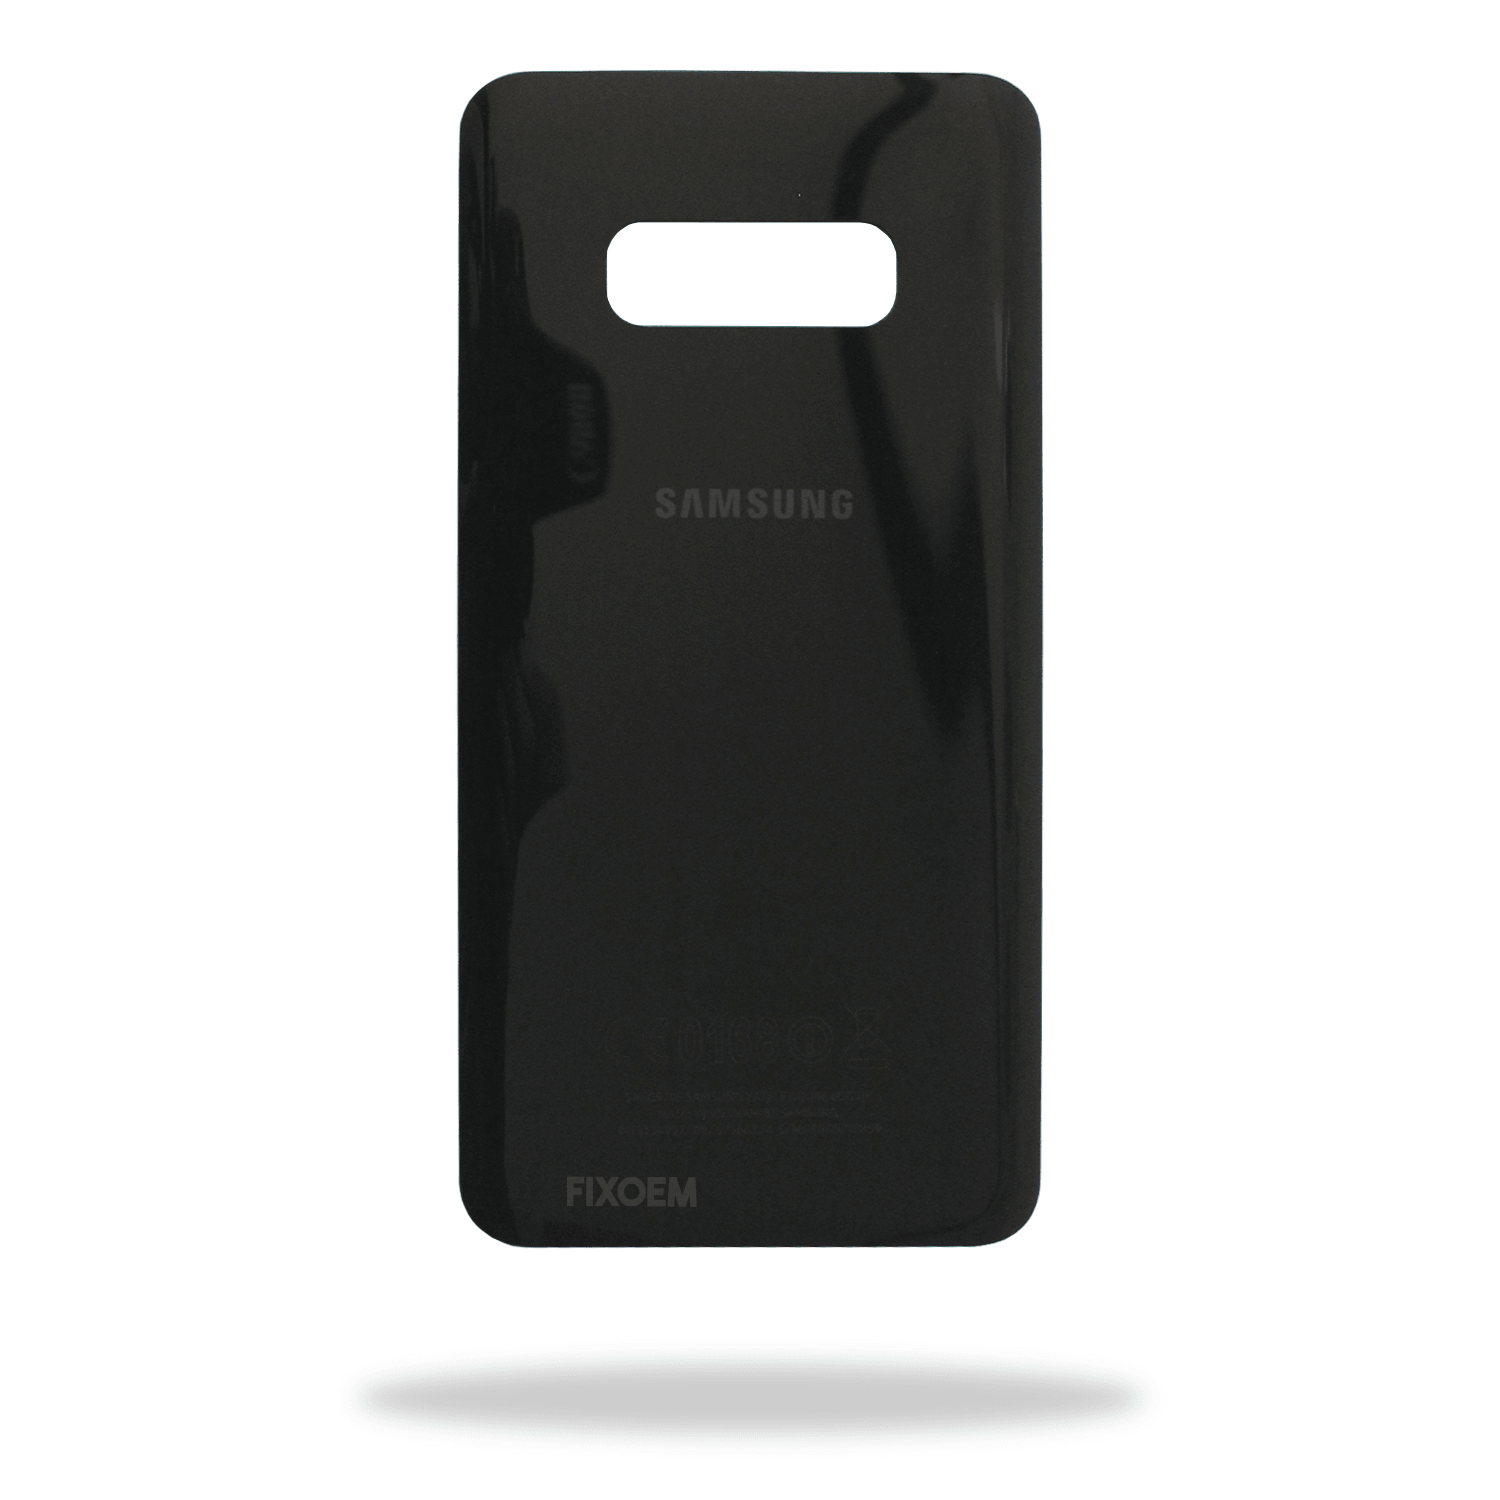 Tapa Trasera Samsung S10E Sm-G970F a solo $ 90.00 Refaccion y puestos celulares, refurbish y microelectronica.- FixOEM